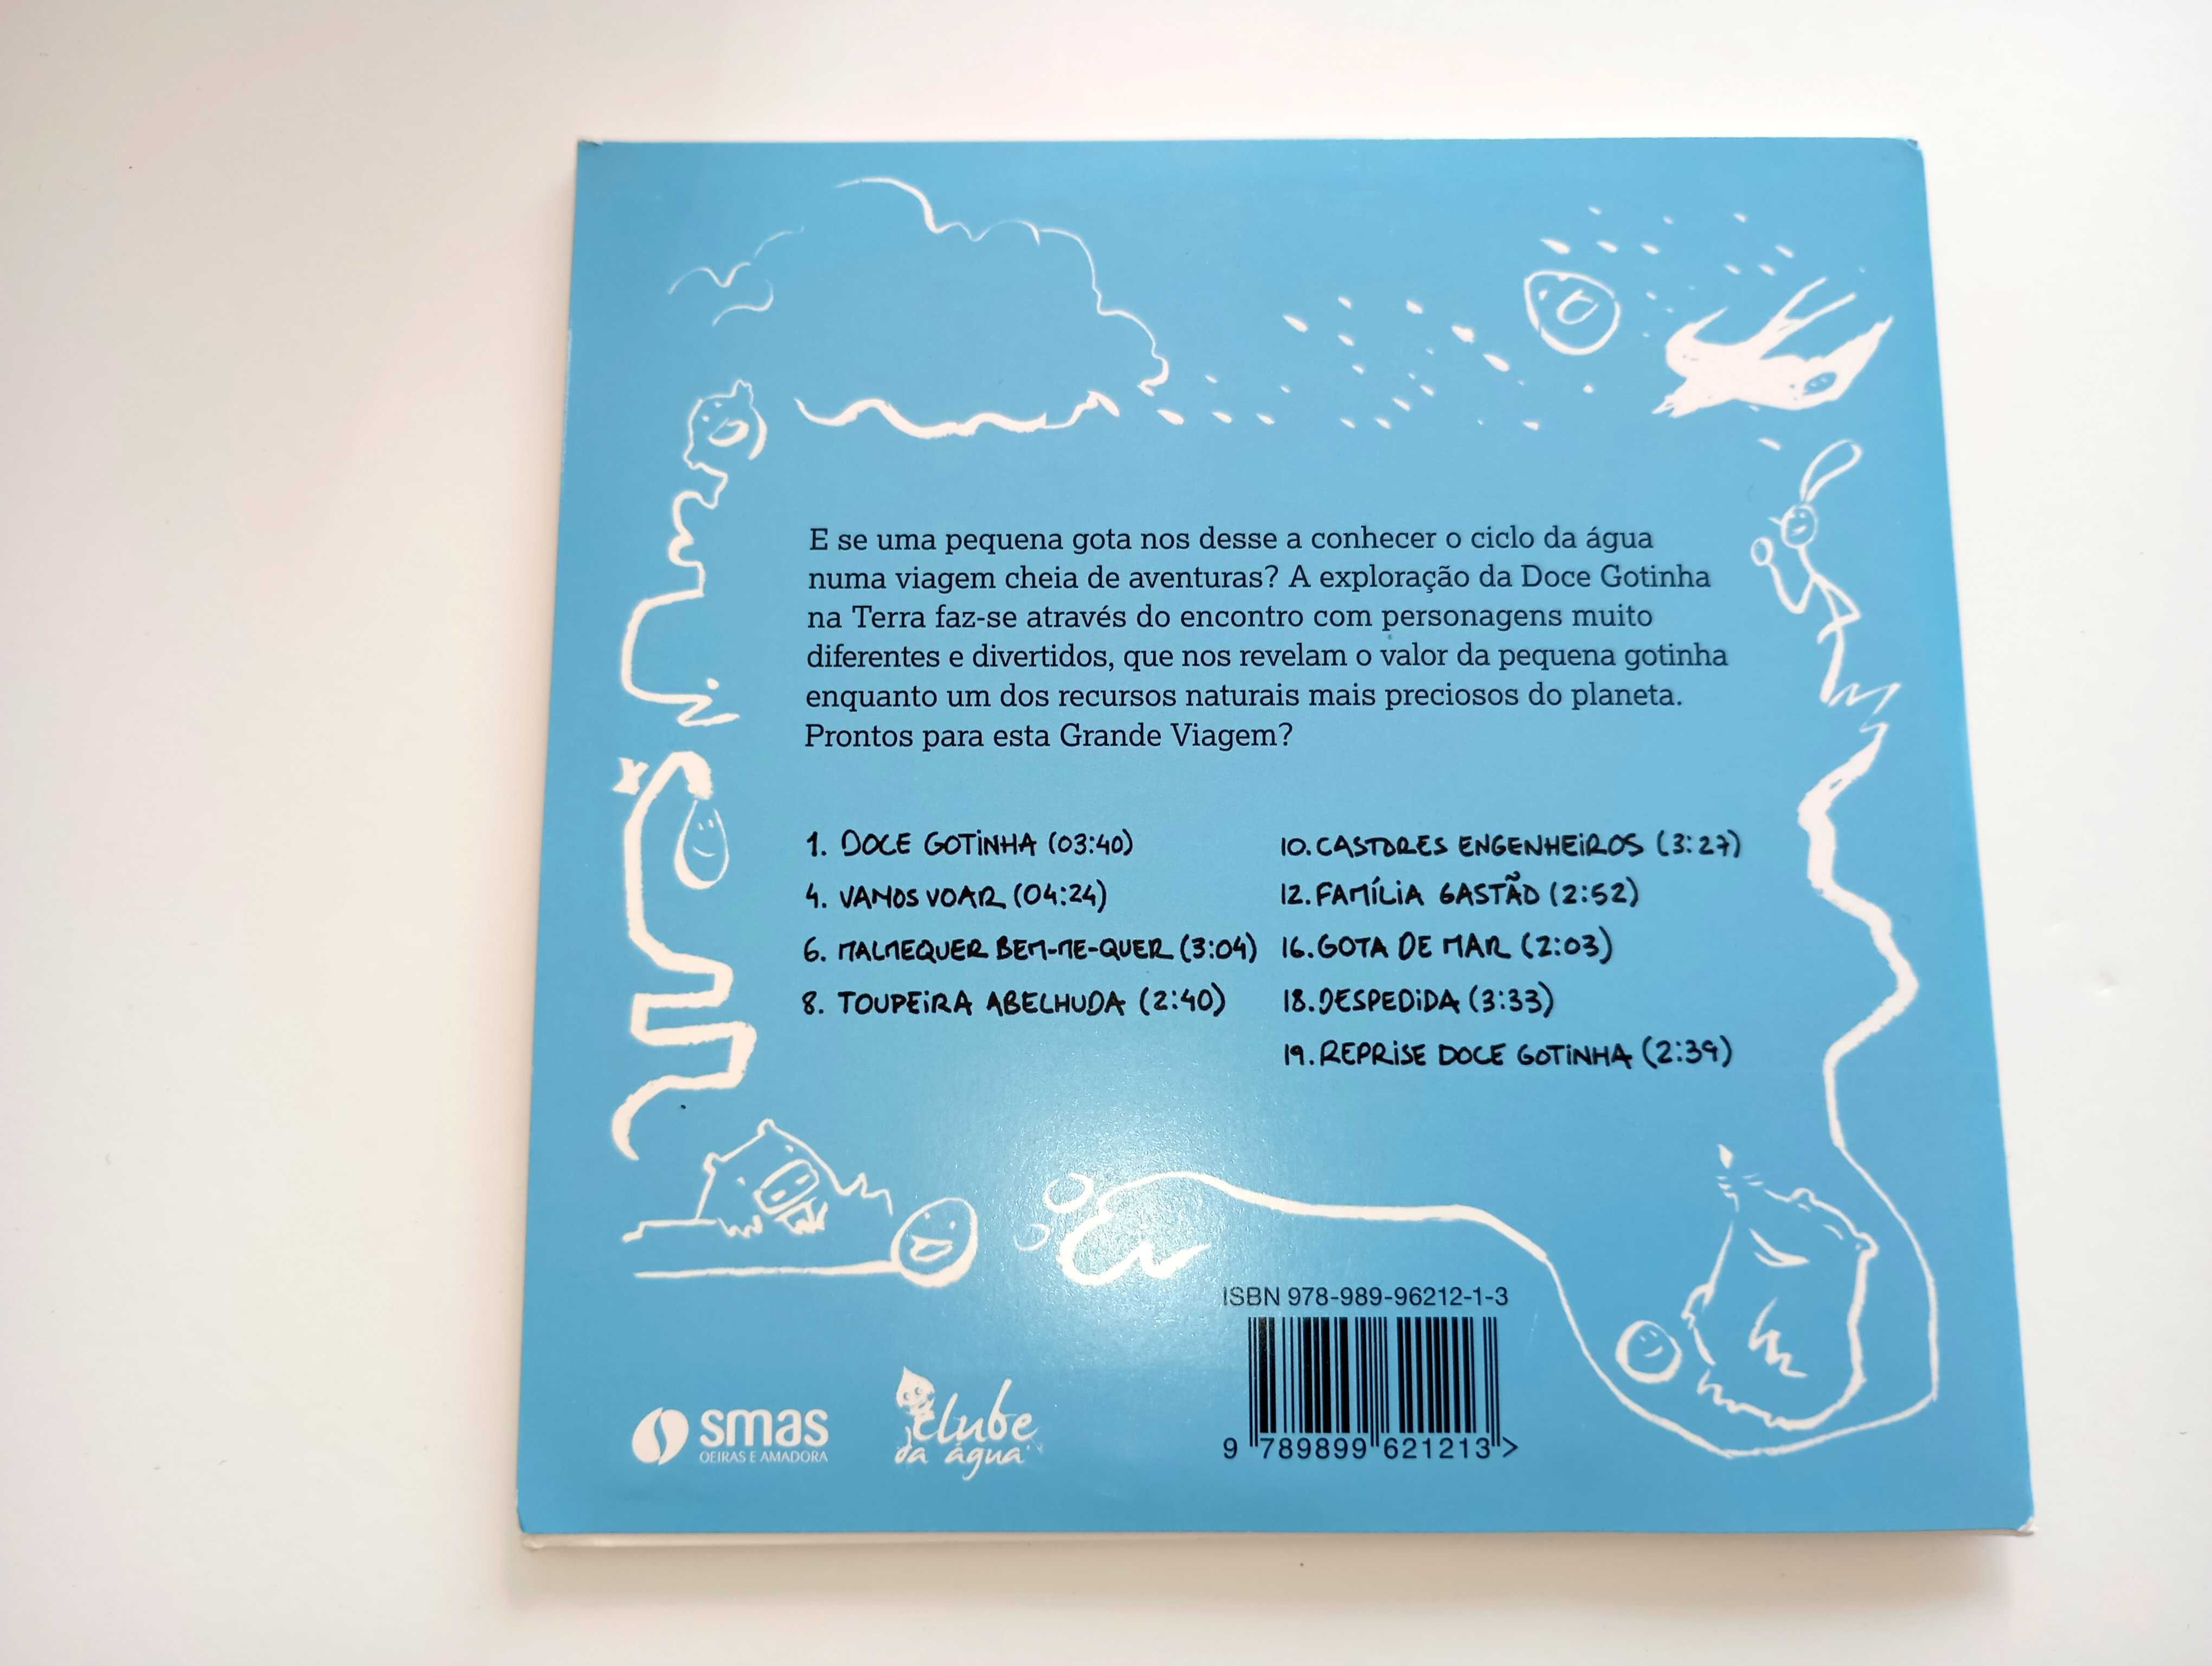 CD Original - Doce gotinha, uma grande viagem